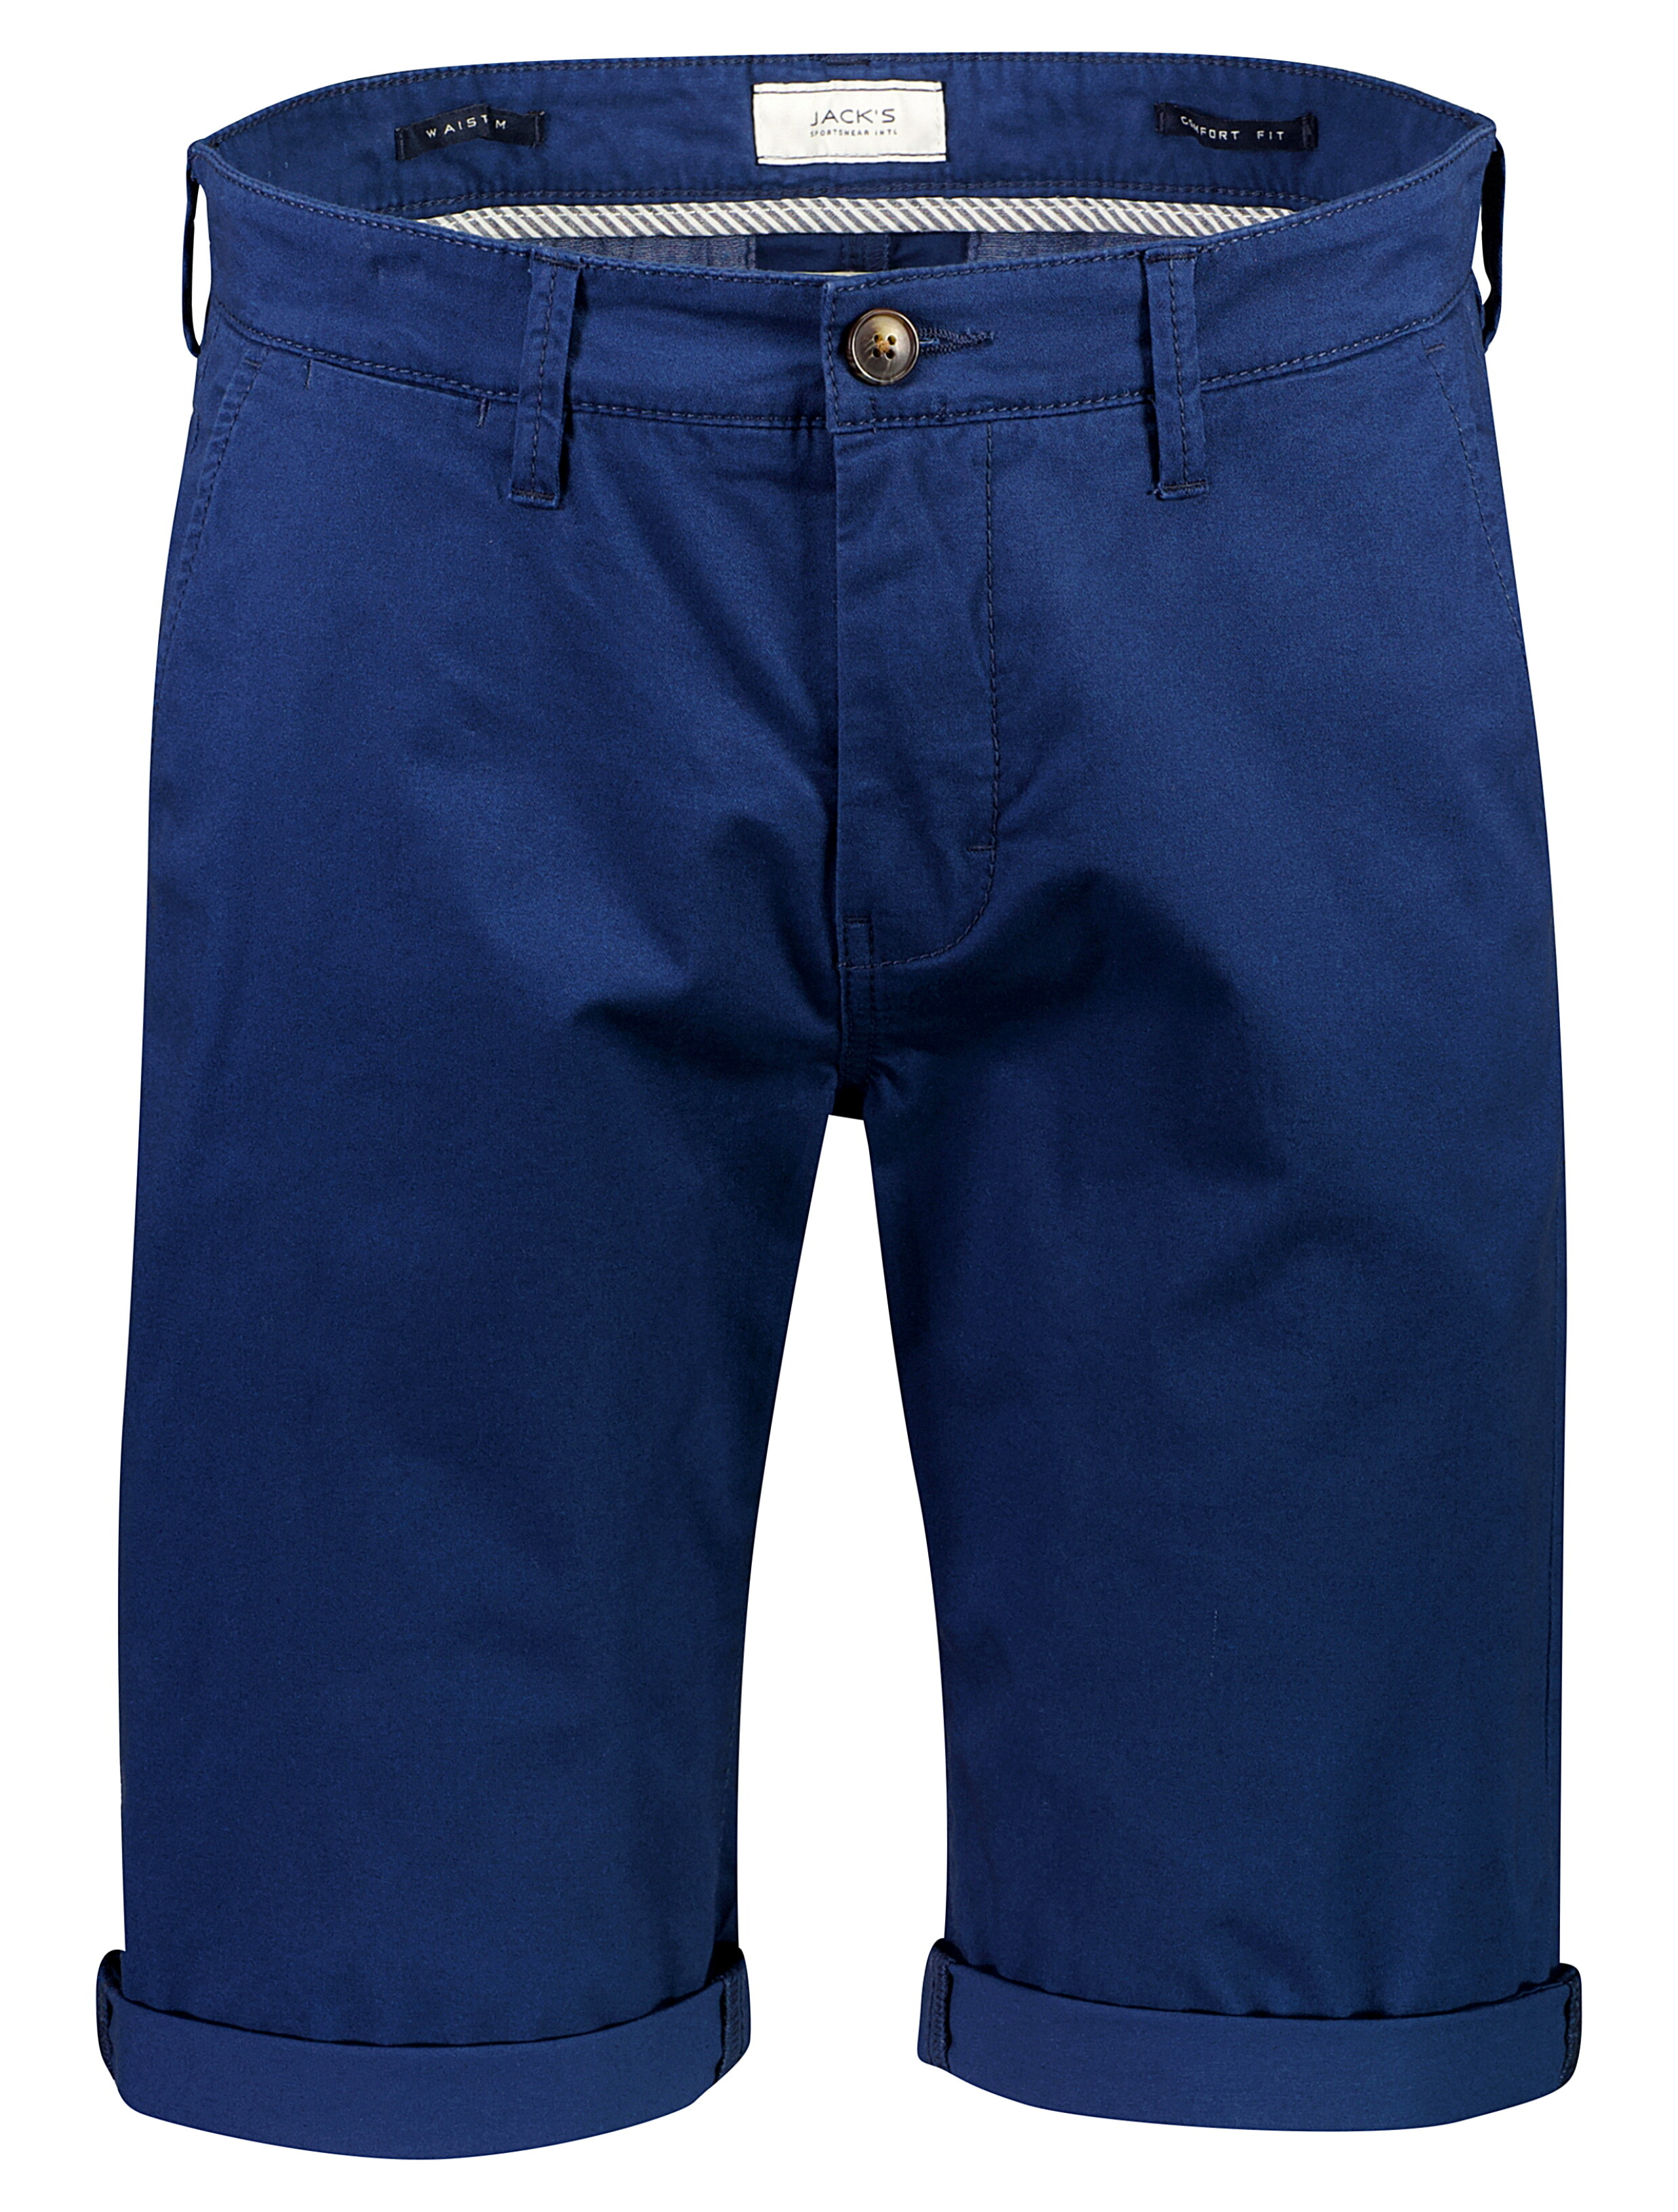 Jack's Chino shorts blå / dk blue